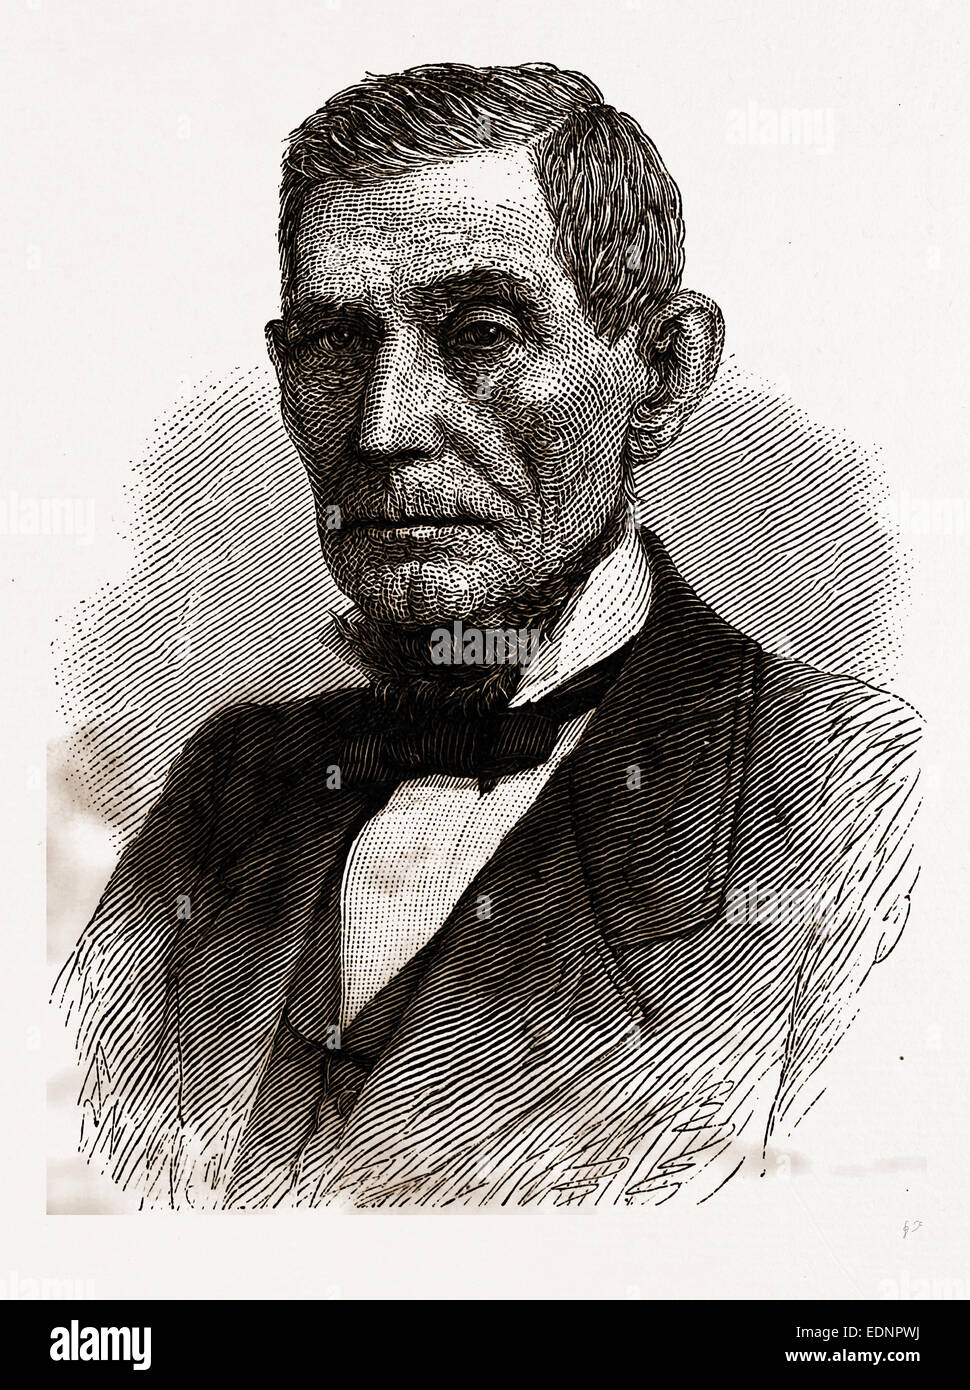 Le député. JAMES D. WILLIAMS, dernier gouverneur de l'INDIANA, 19e siècle gravure, USA, Amérique Latine Banque D'Images